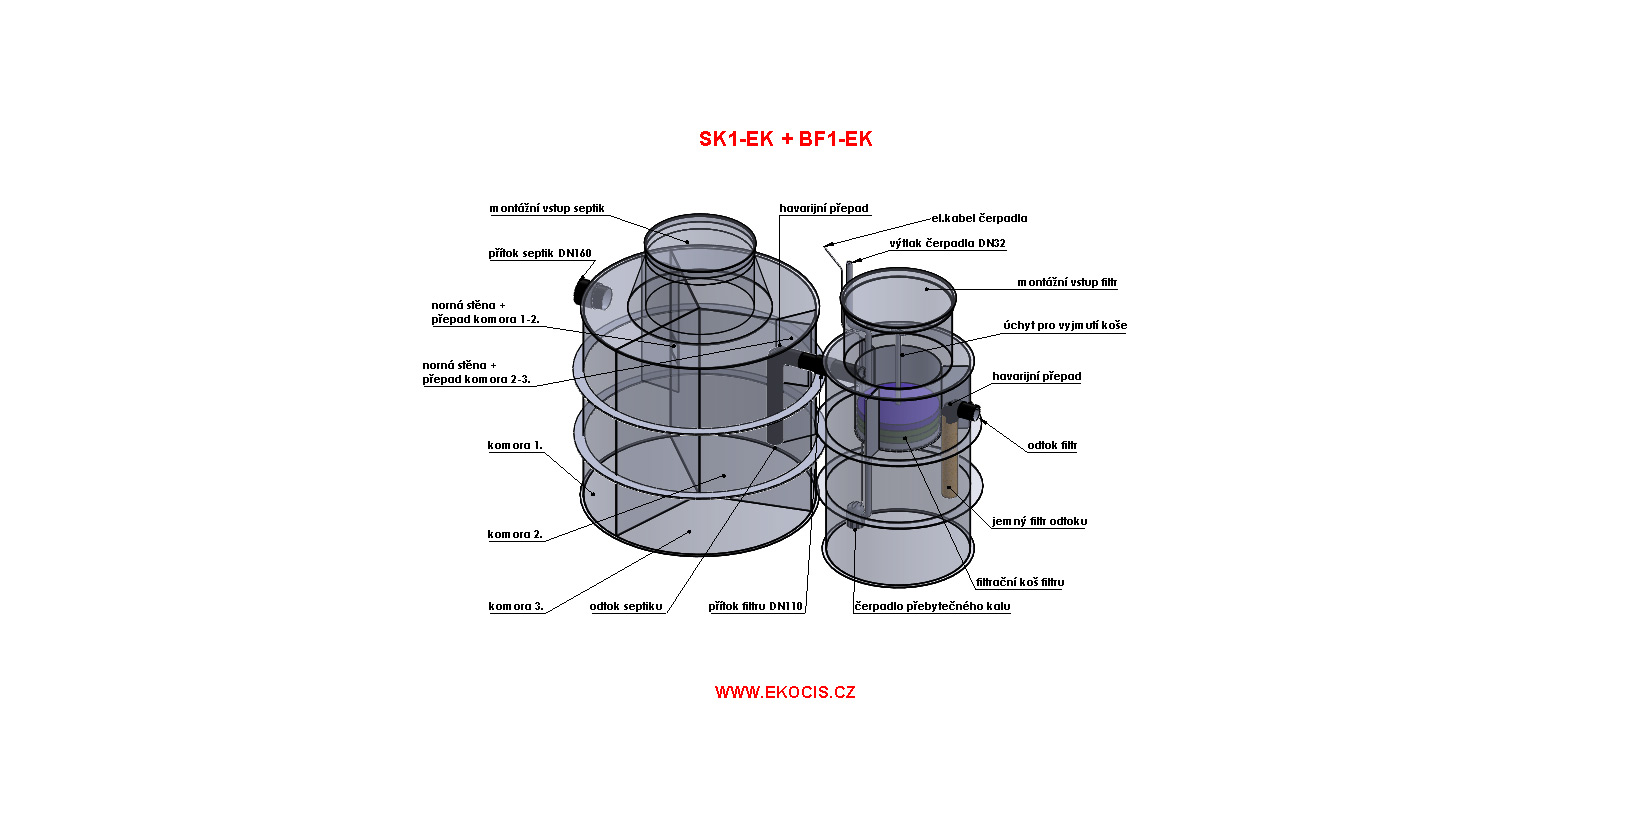 Septik 1-6 osob SK1-EK + biofiltr BF1-EK